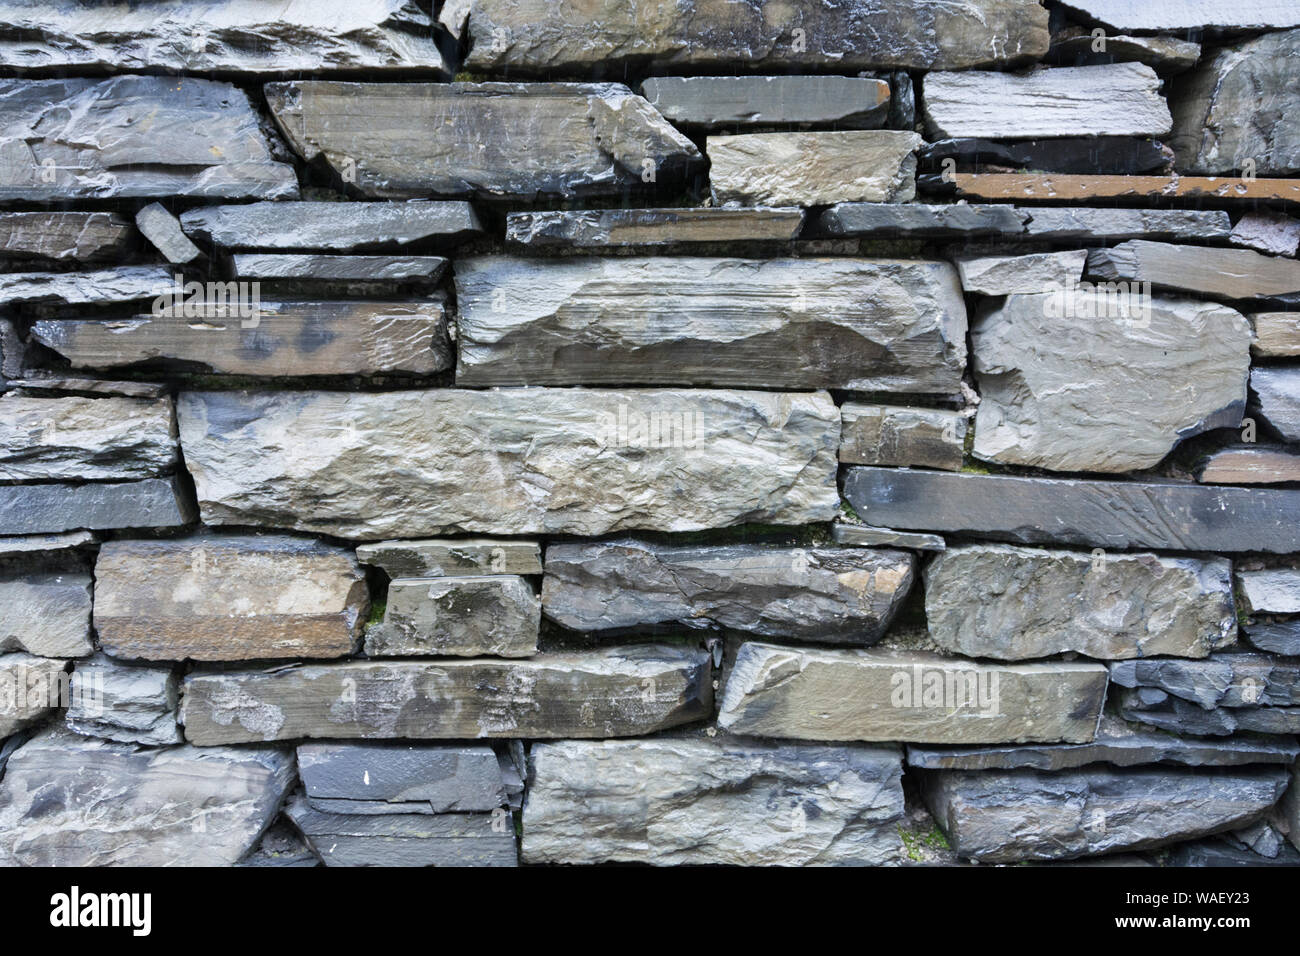 Murature di ardesia e muri in pietra a secco nel distretto del lago, Cumbria, Regno Unito Foto Stock